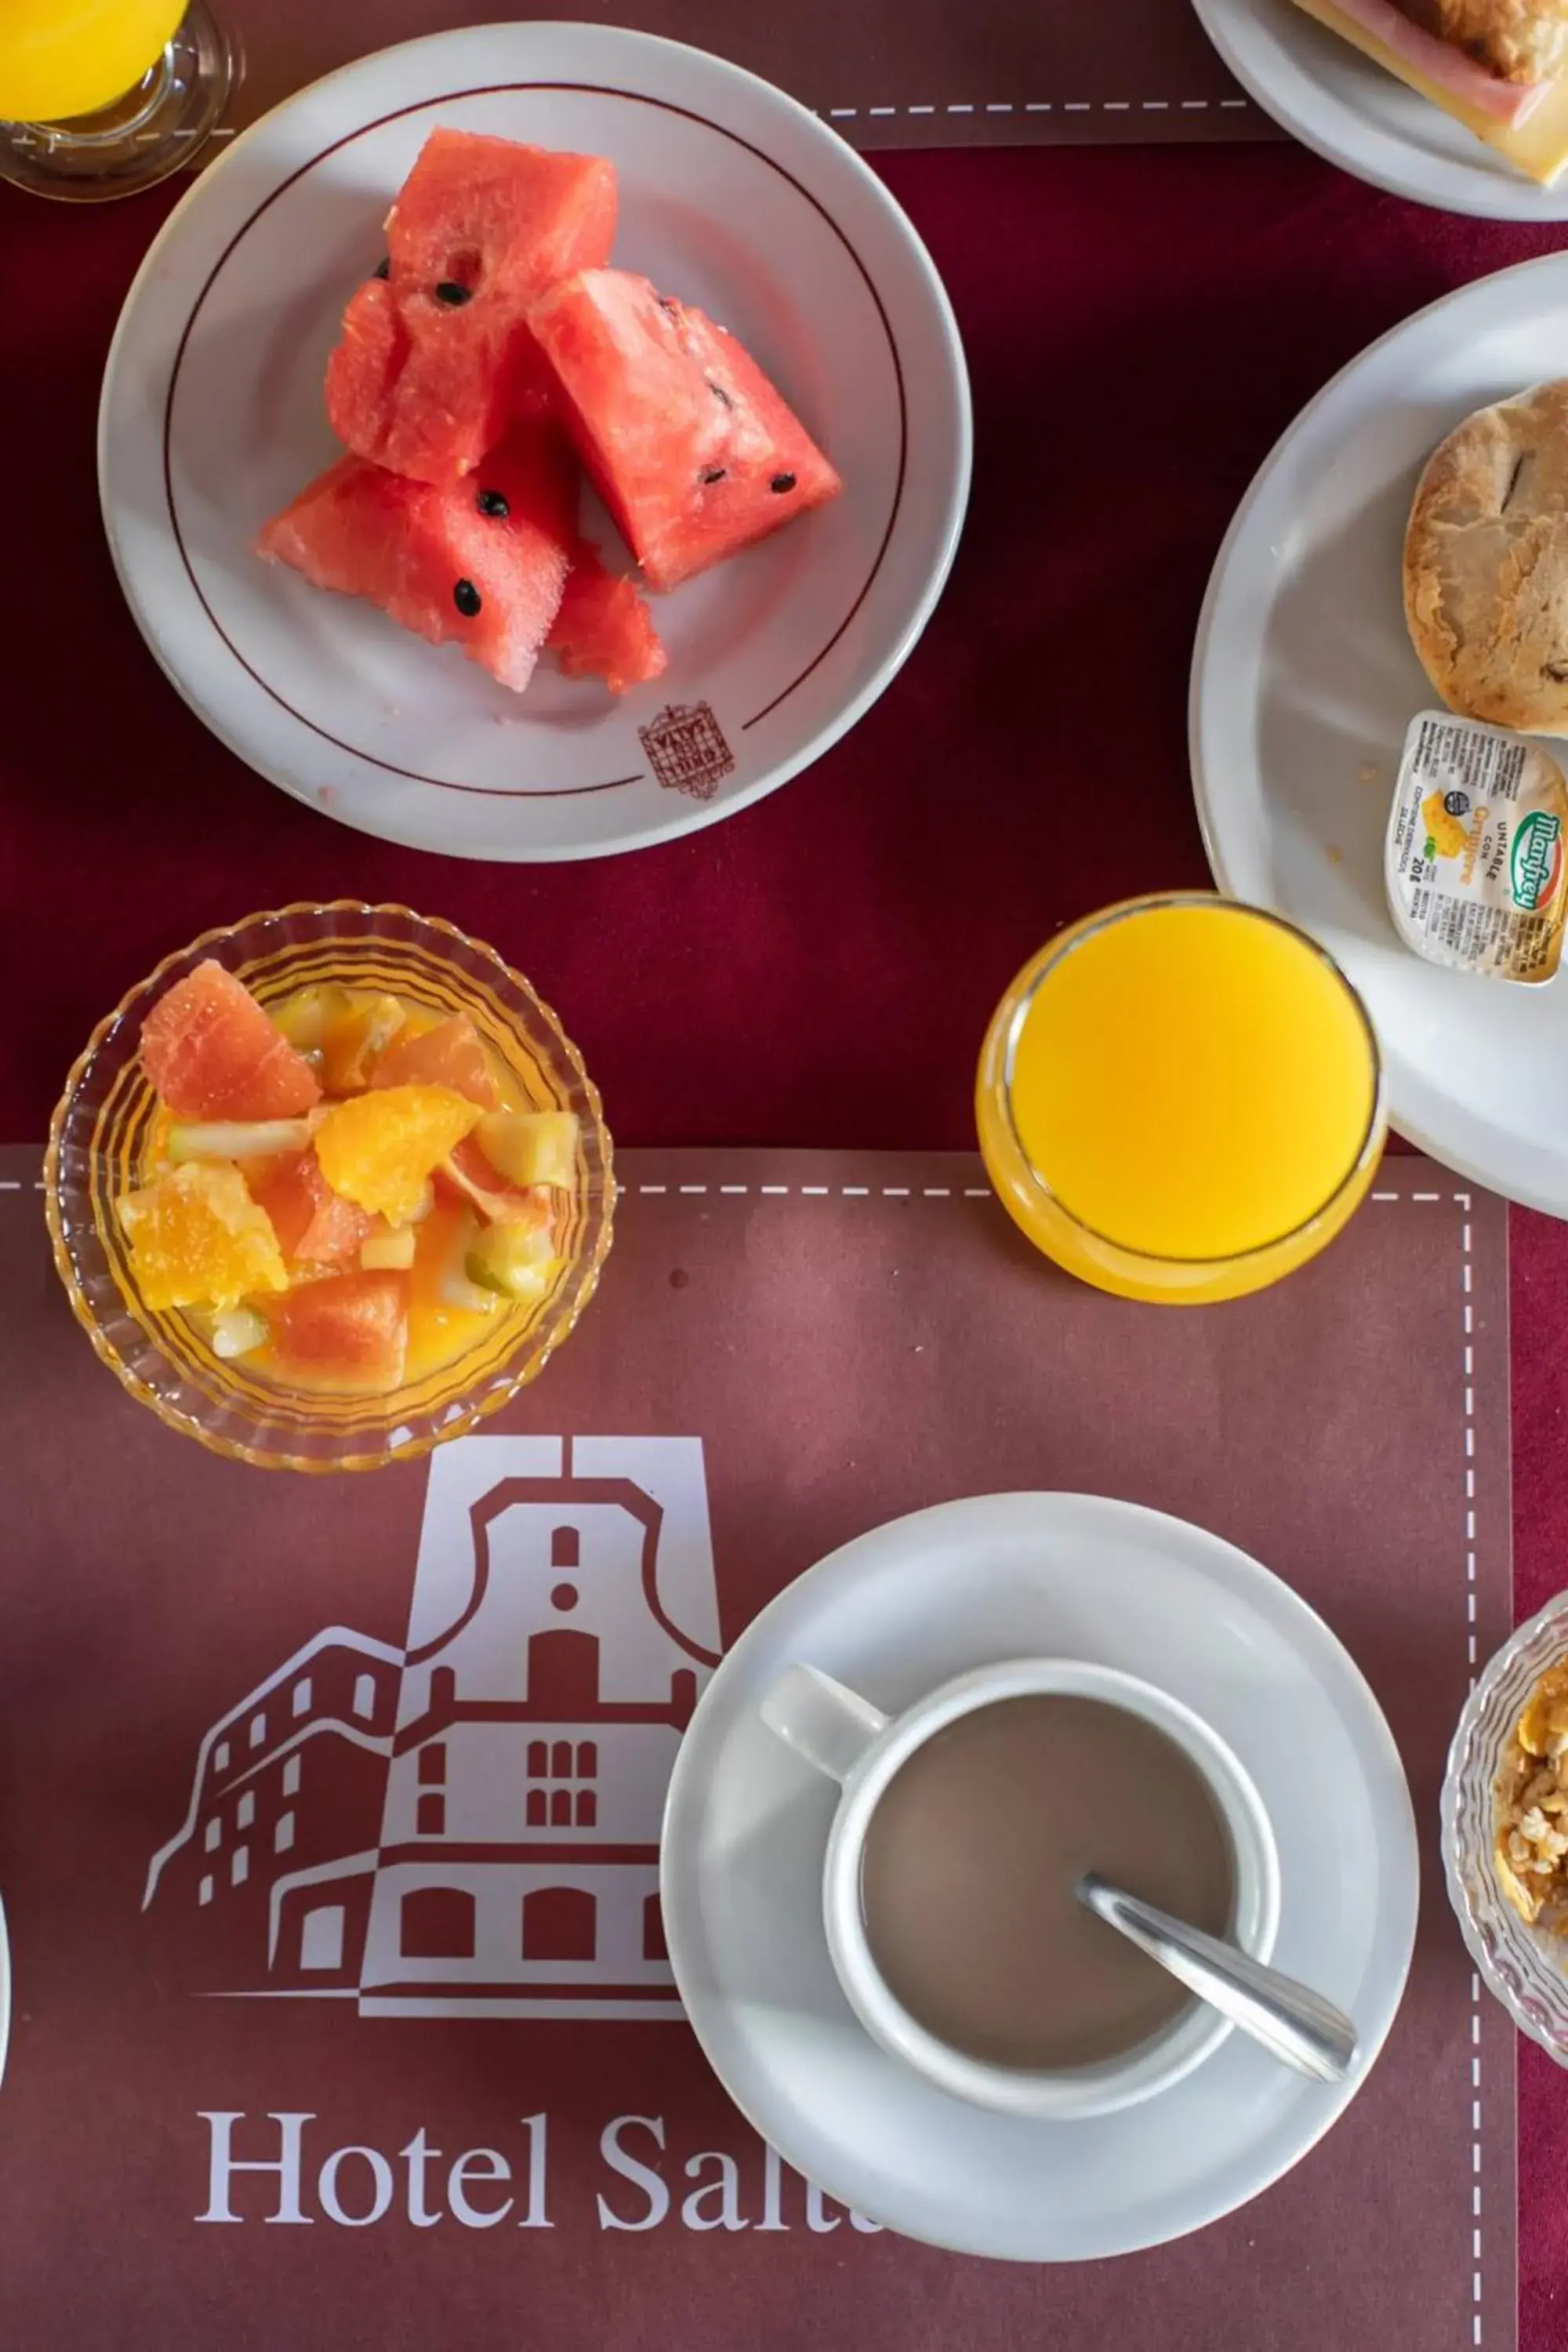 Breakfast in Hotel Salta